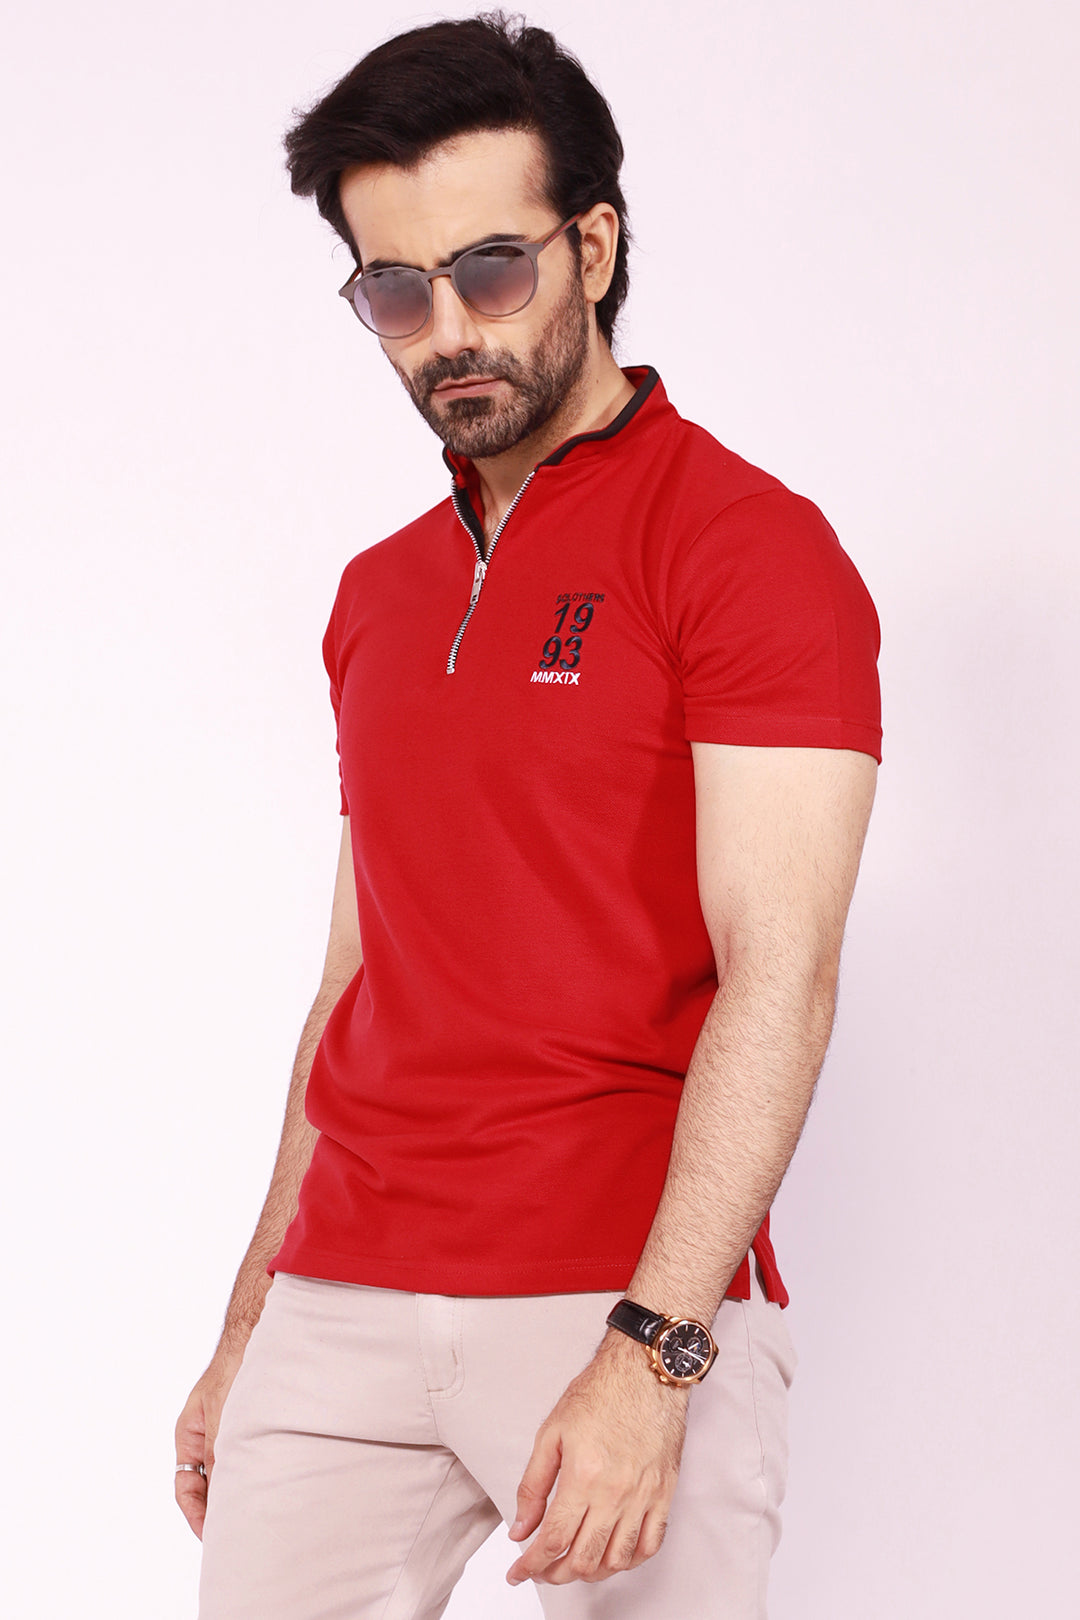 Men Polo Shirt Online Pakistan 